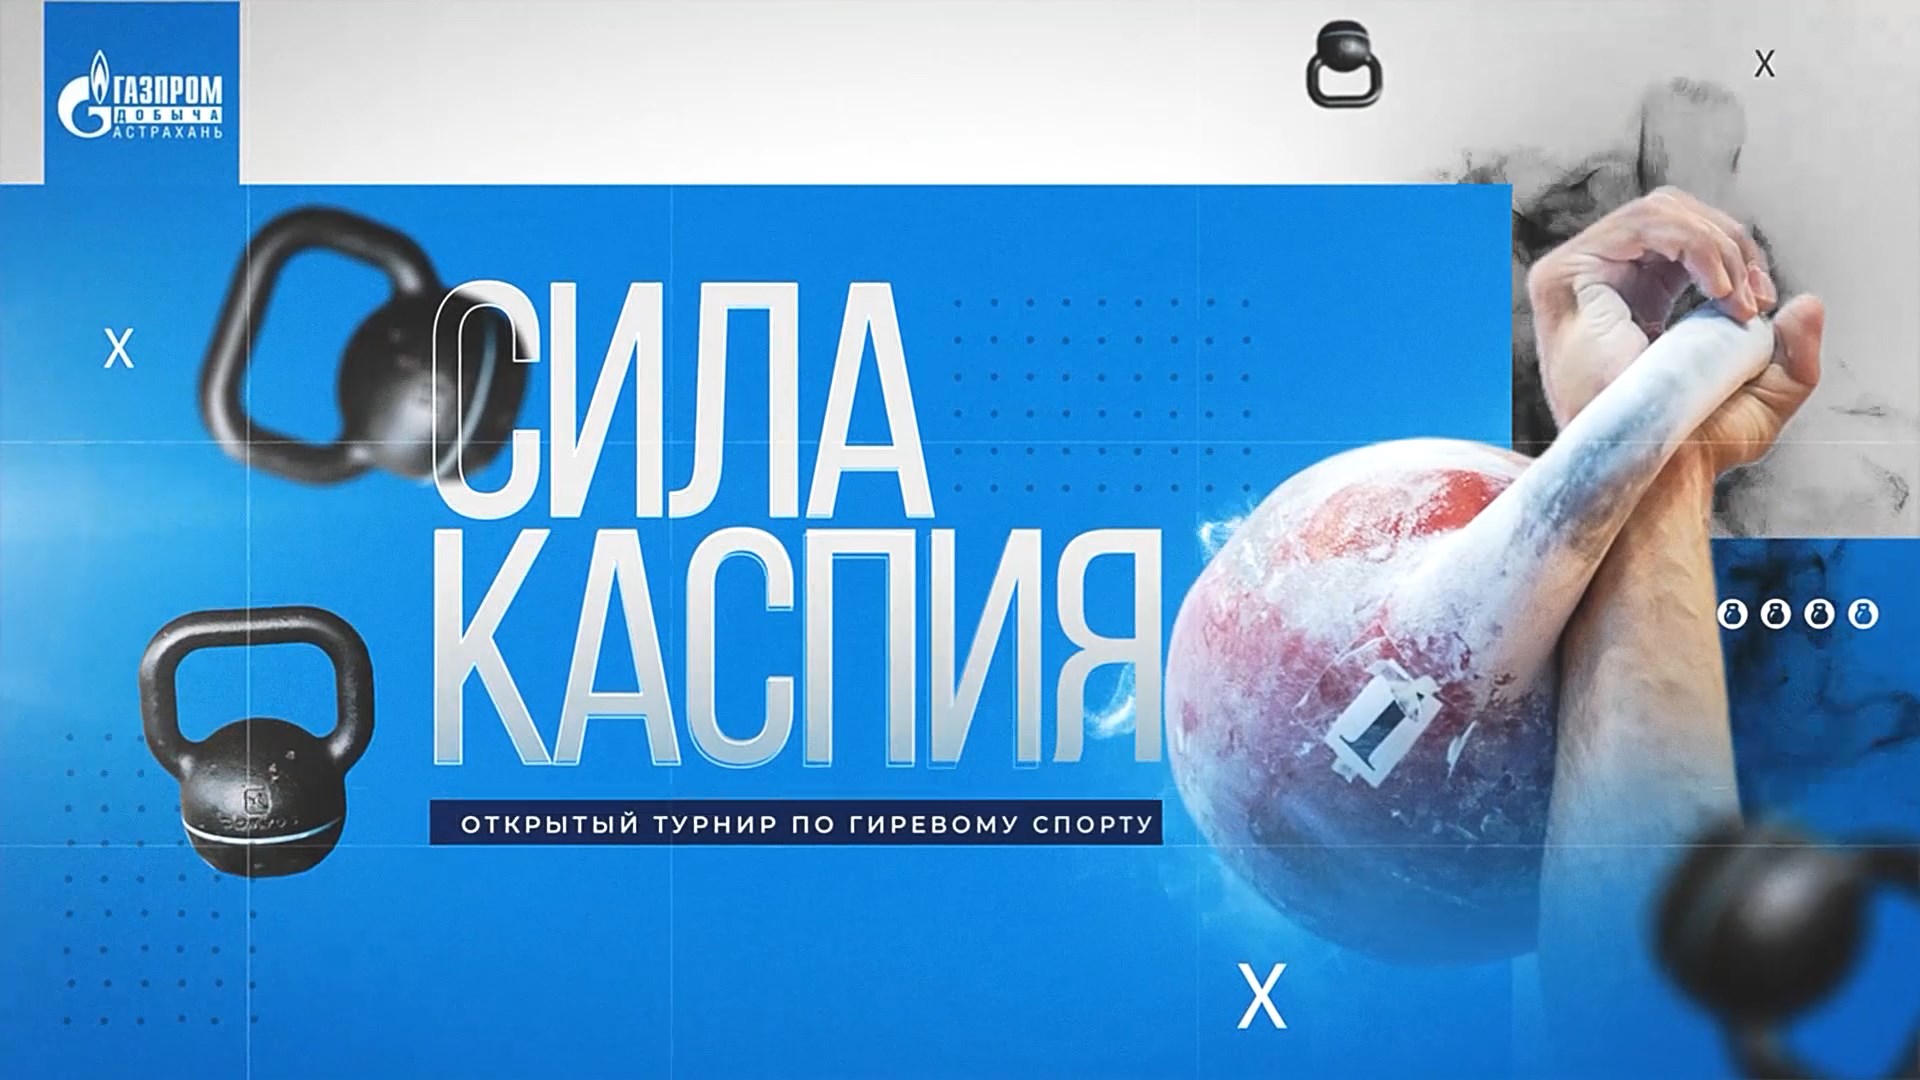 Открытый турнир по гиревому спорту среди предприятий Группы Газпром в Астрахани